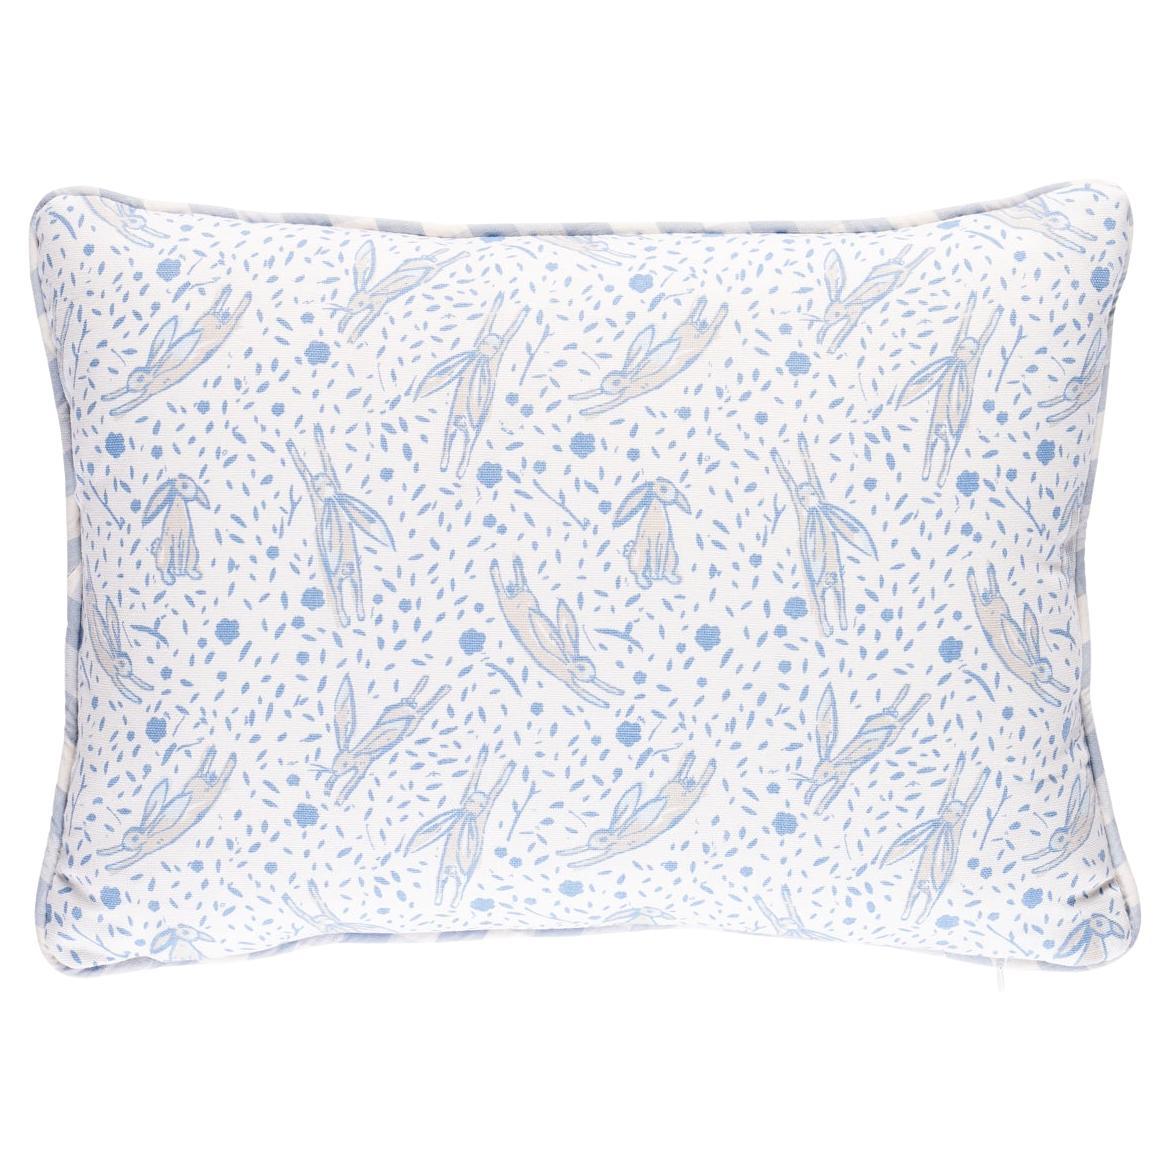 Schumacher x Marie-Chantal Rabbit Print 18 x 12" Pillow in Blue